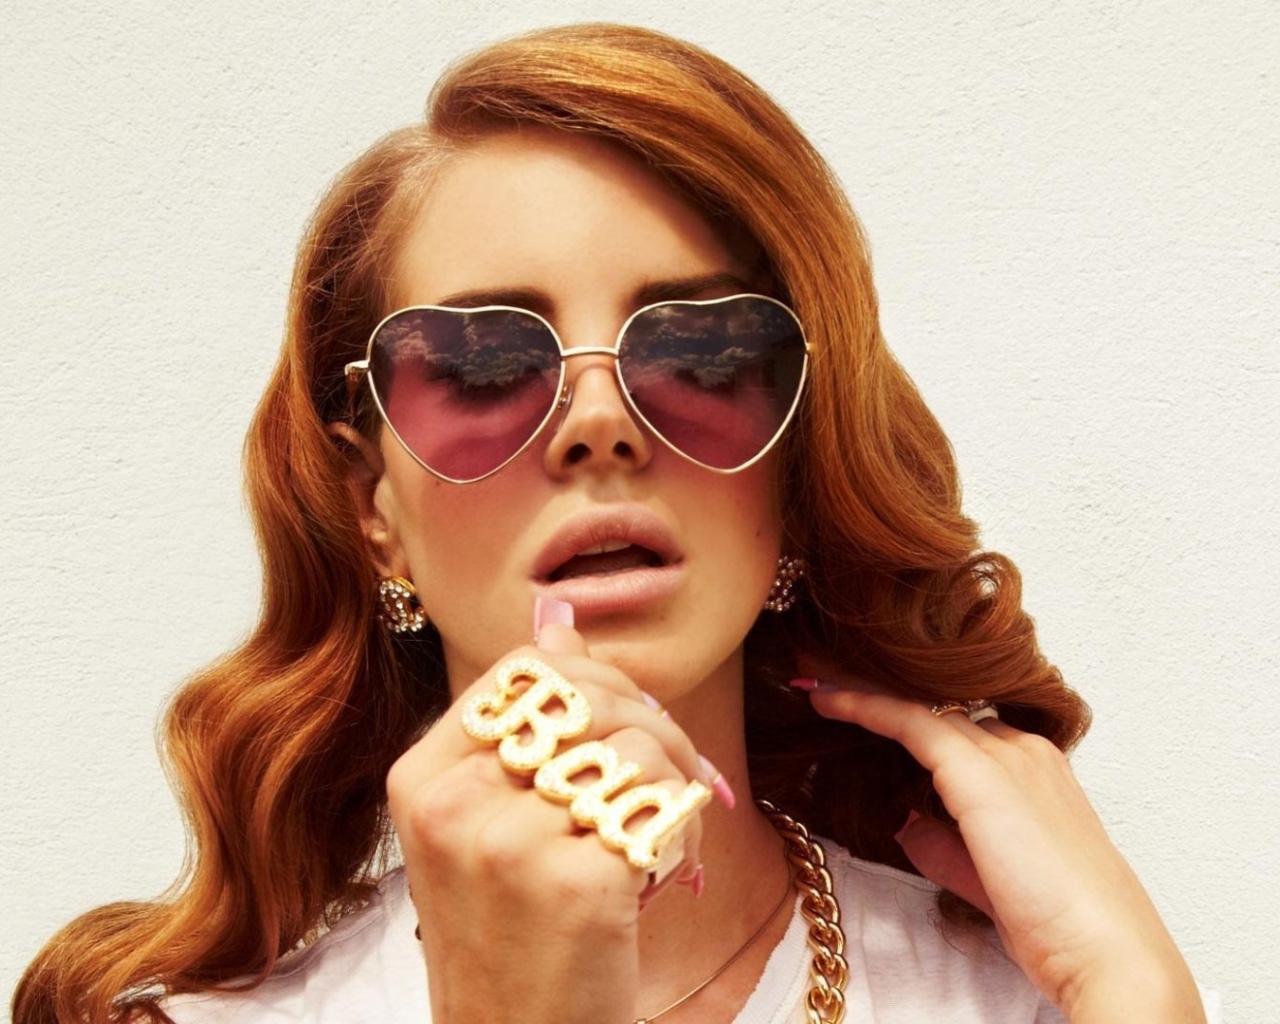 Lana Del Rey the bad girl